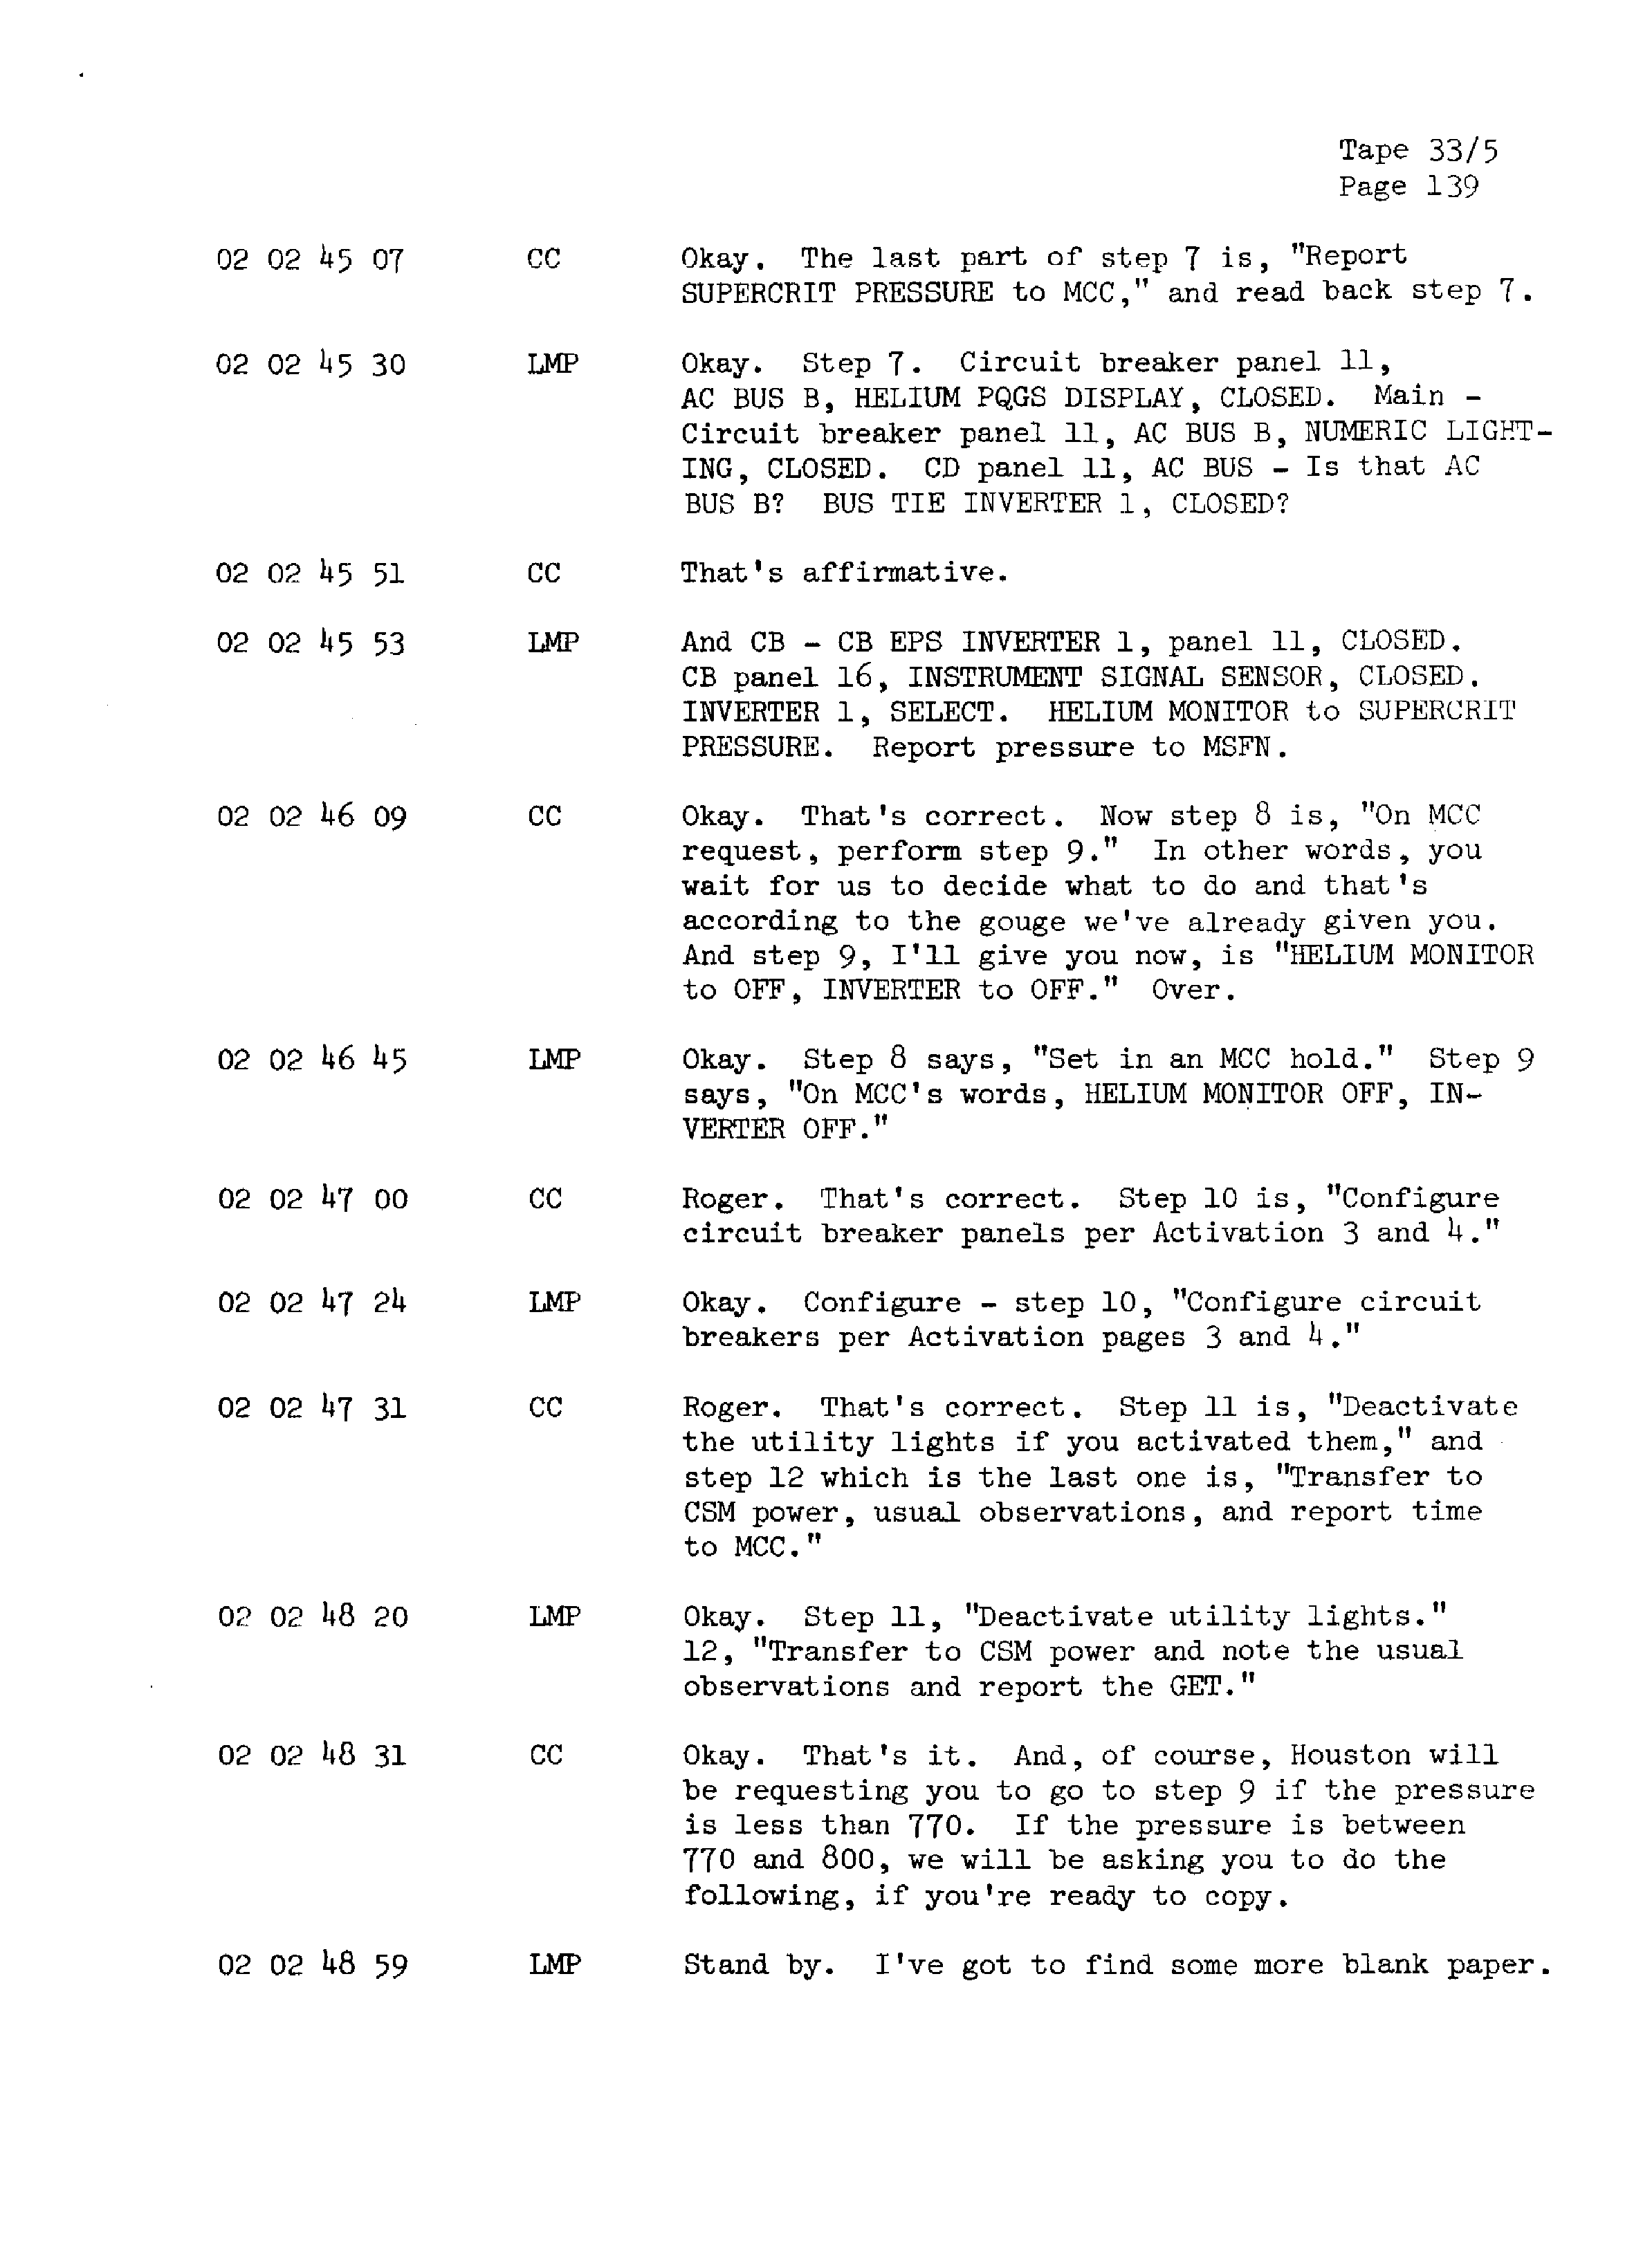 Page 146 of Apollo 13’s original transcript